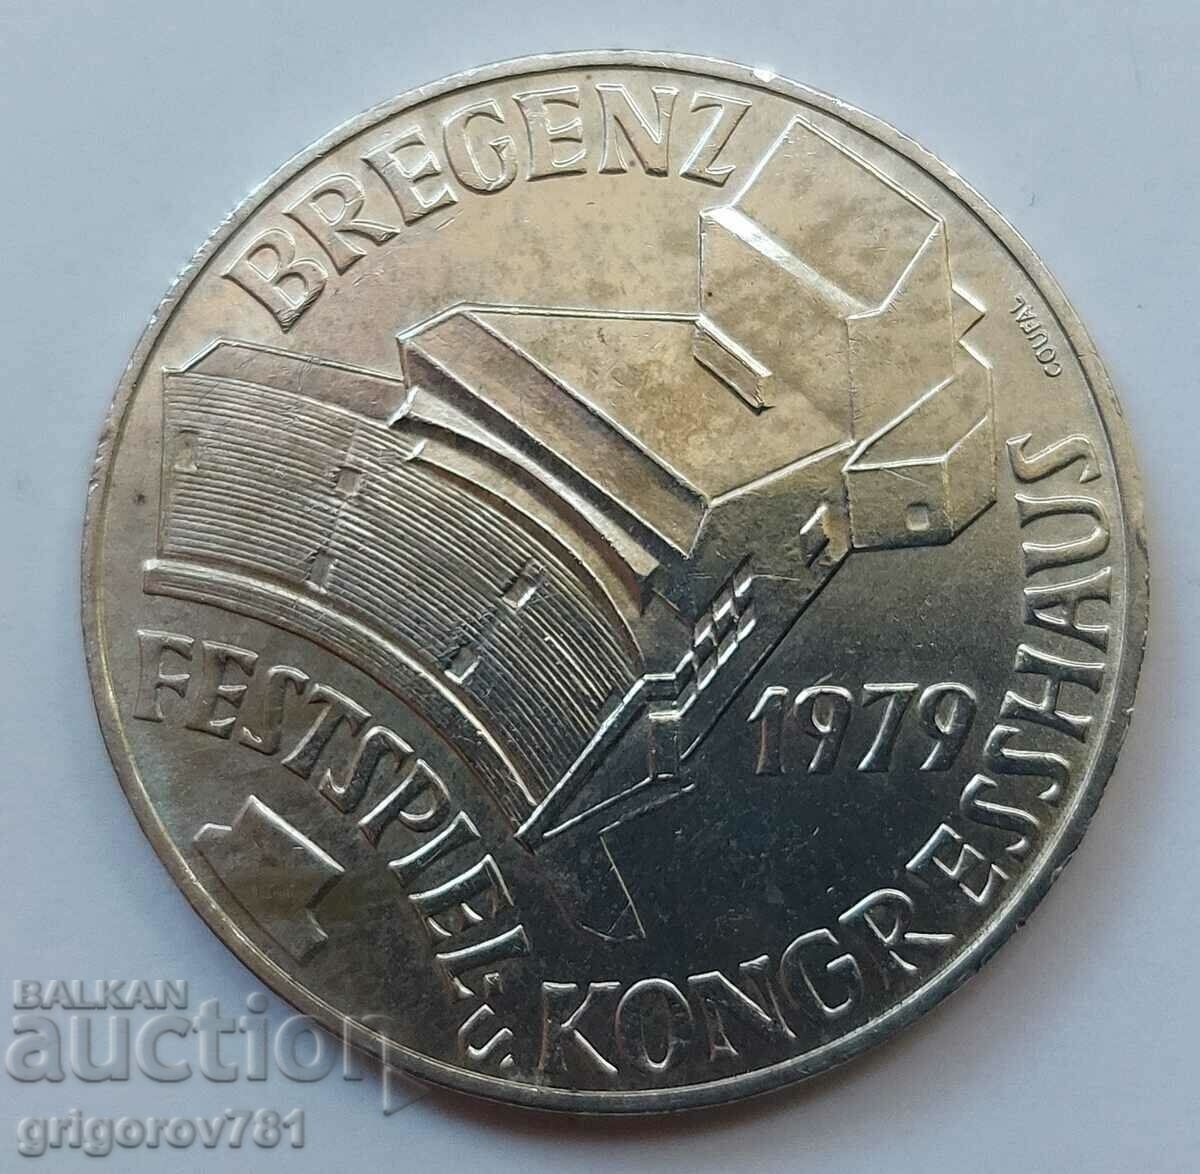 100 Shilling Silver Αυστρία 1979 - Ασημένιο νόμισμα #23